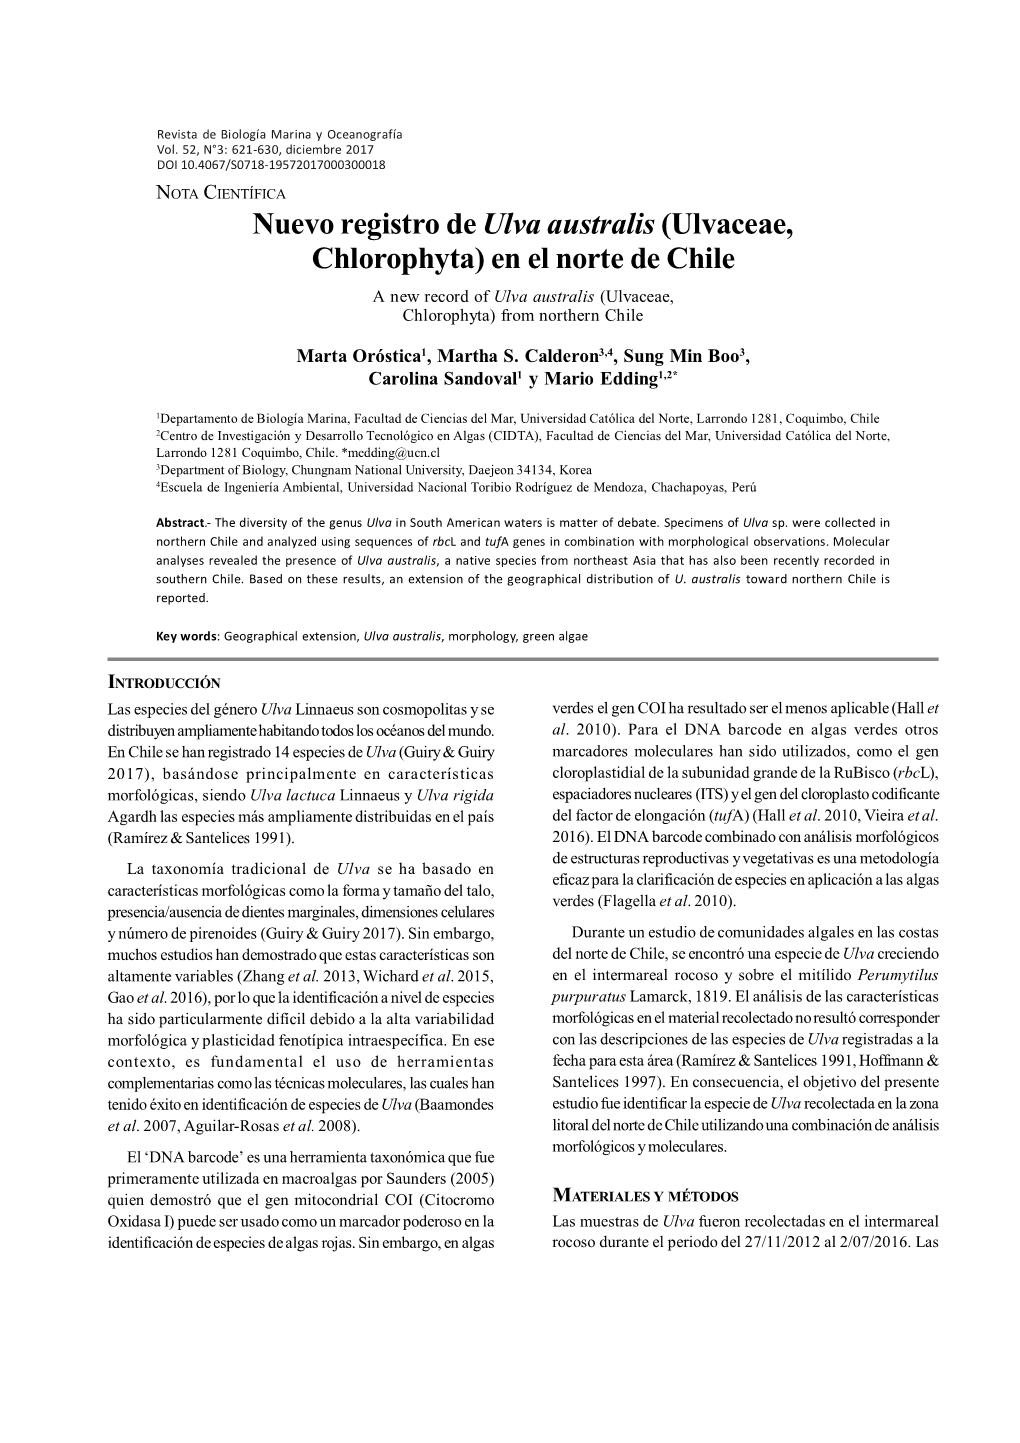 Nuevo Registro De Ulva Australis (Ulvaceae, Chlorophyta) En El Norte De Chile a New Record of Ulva Australis (Ulvaceae, Chlorophyta) from Northern Chile